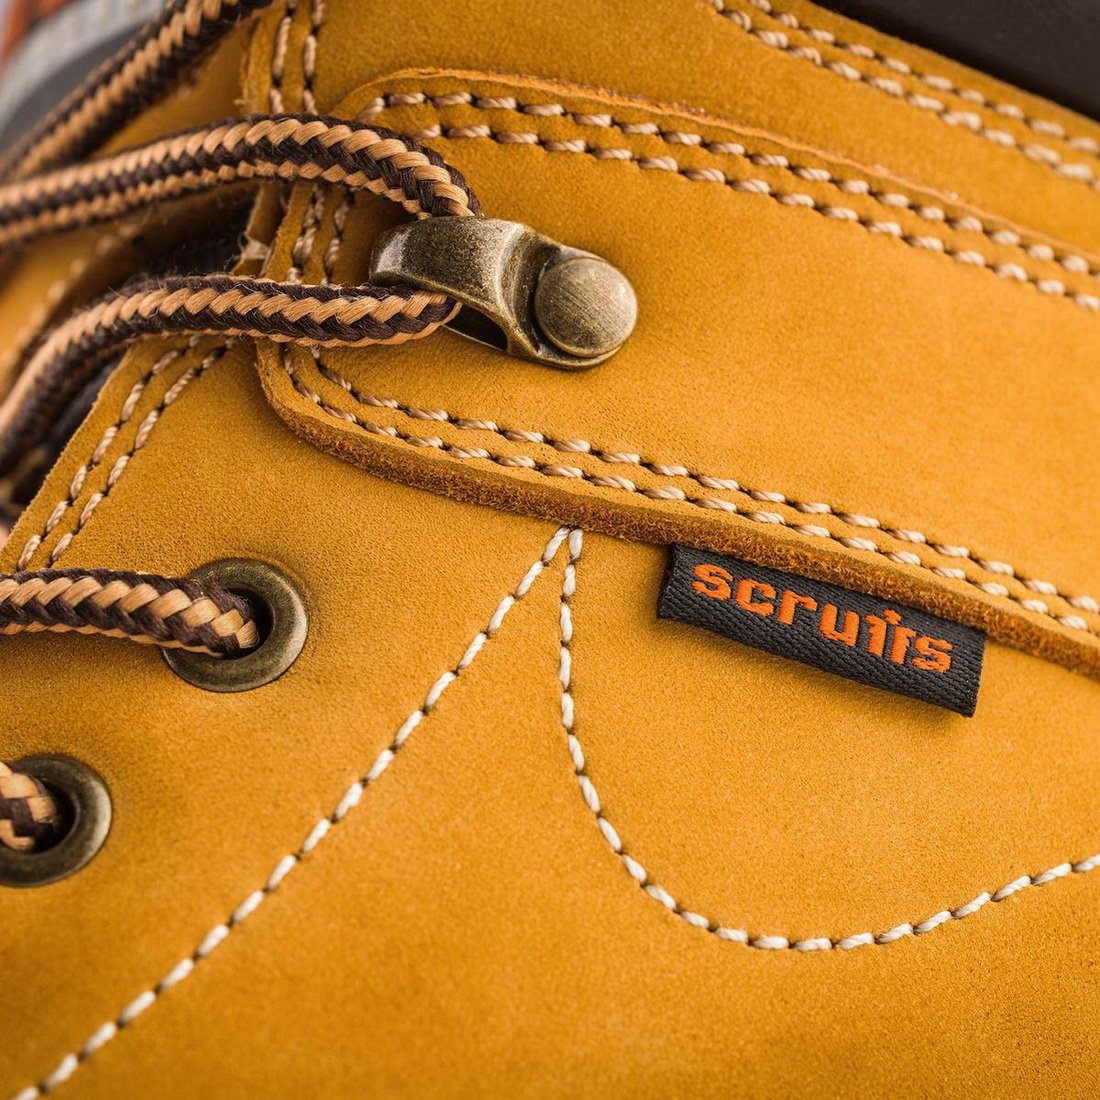 scruffs sharpe safety boots